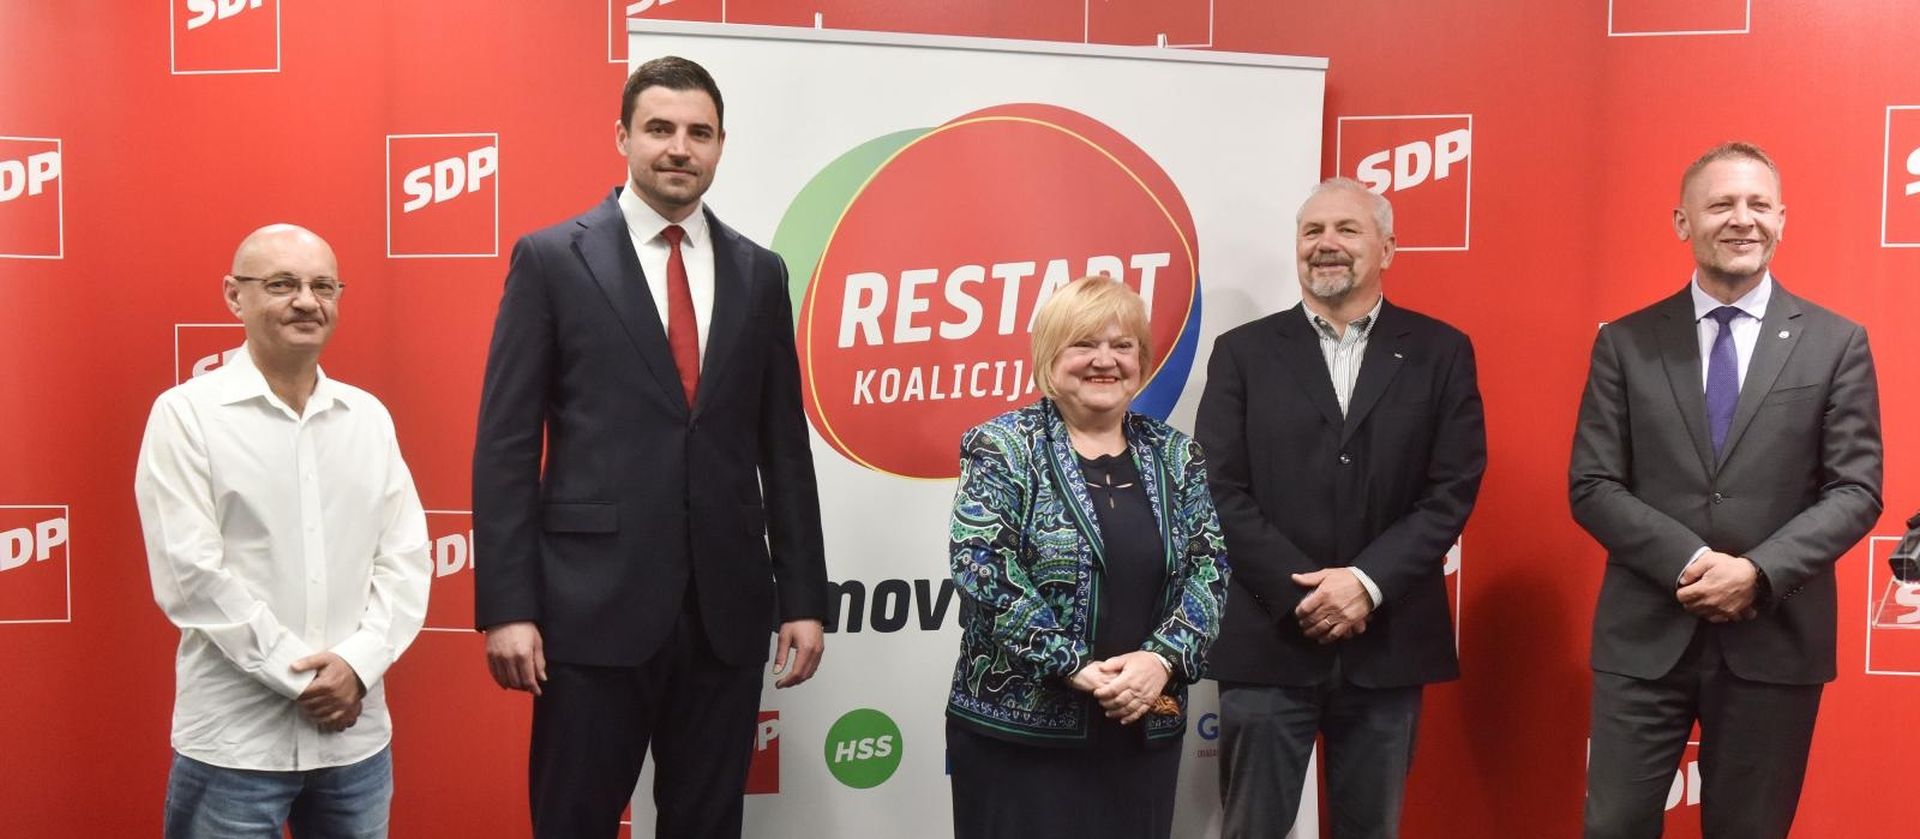 09.05.2020., Zagreb - U sjedistu SDP-a odrzano je predstavljanje nove Restart koalicije koju cine SDP, HSU, HSS, SNAGA i GLAS. Photo: Davorin Visnjic/PIXSELL